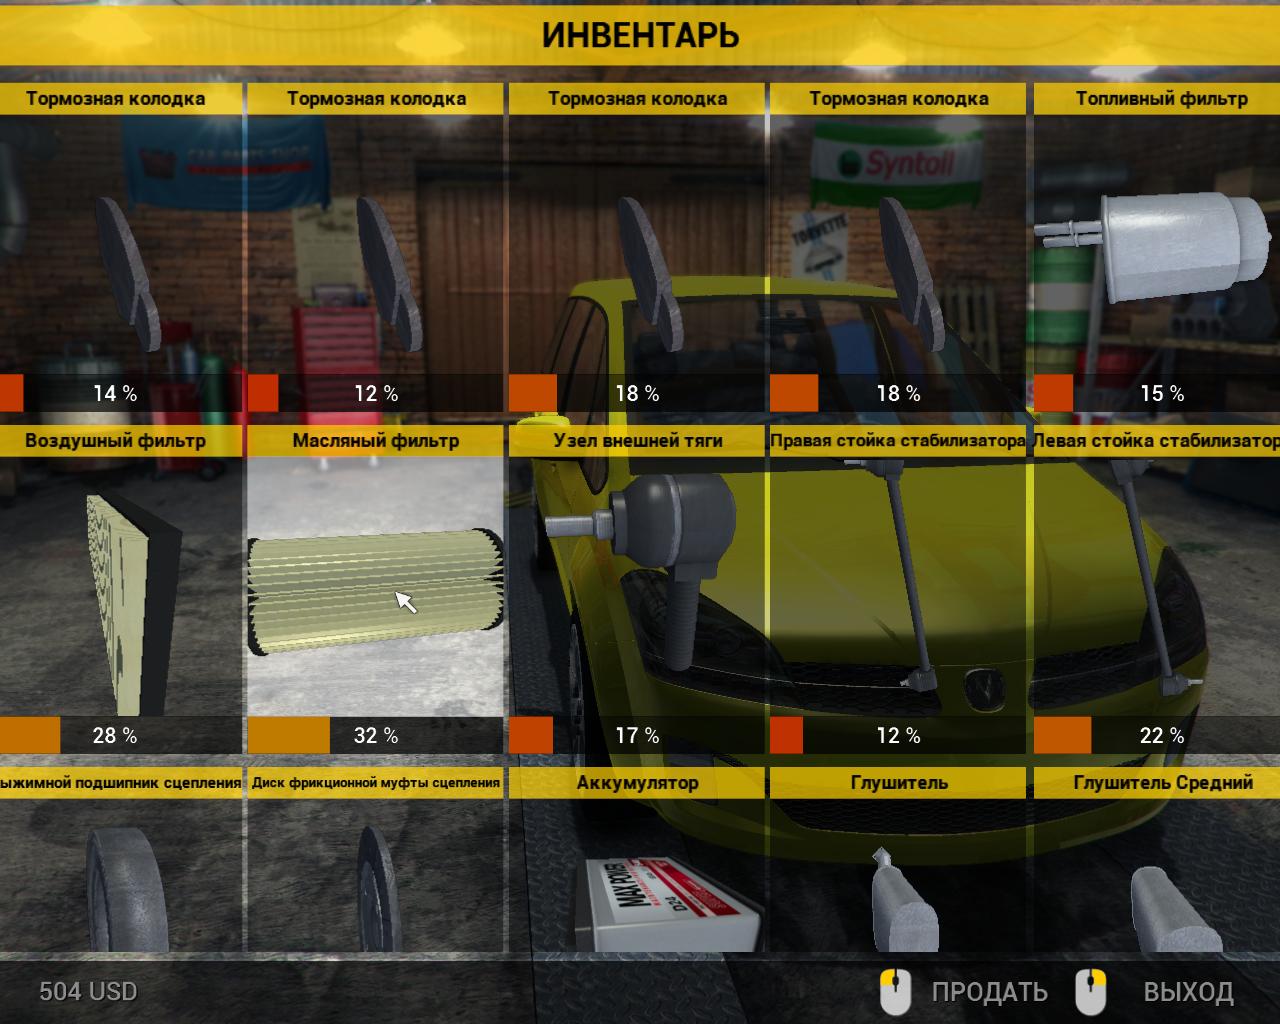 Car Mechanic Simulator 2014 (2014/RUS/RePack) PC